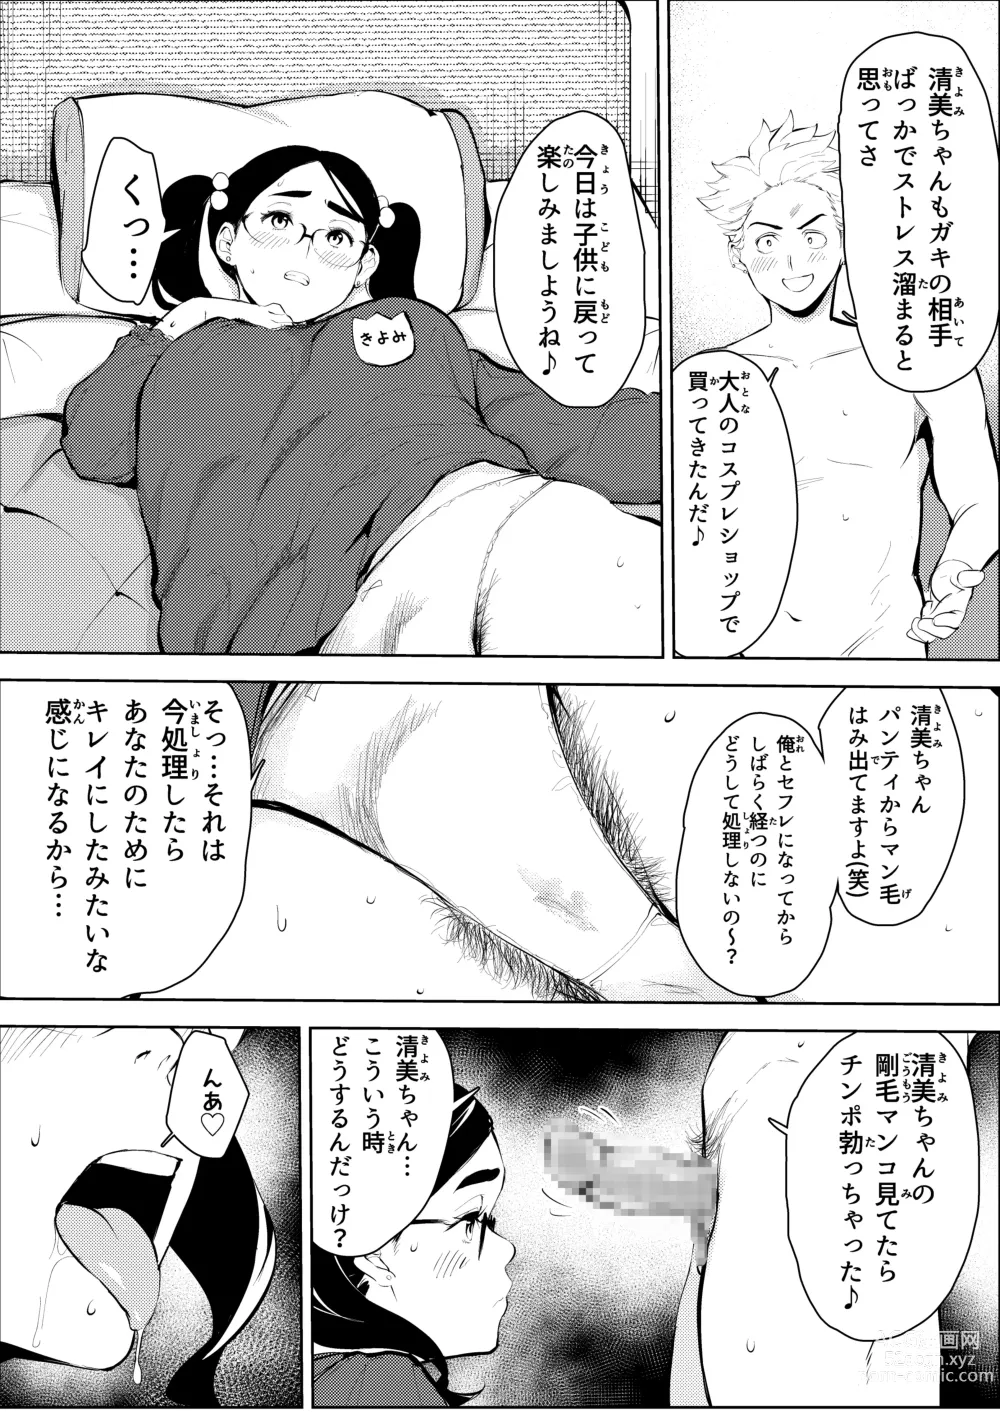 Page 34 of doujinshi 30-Sai hoiku-shi kon katsu pātī de deatta yarimoku ni jinsei dainashi ni sa reru